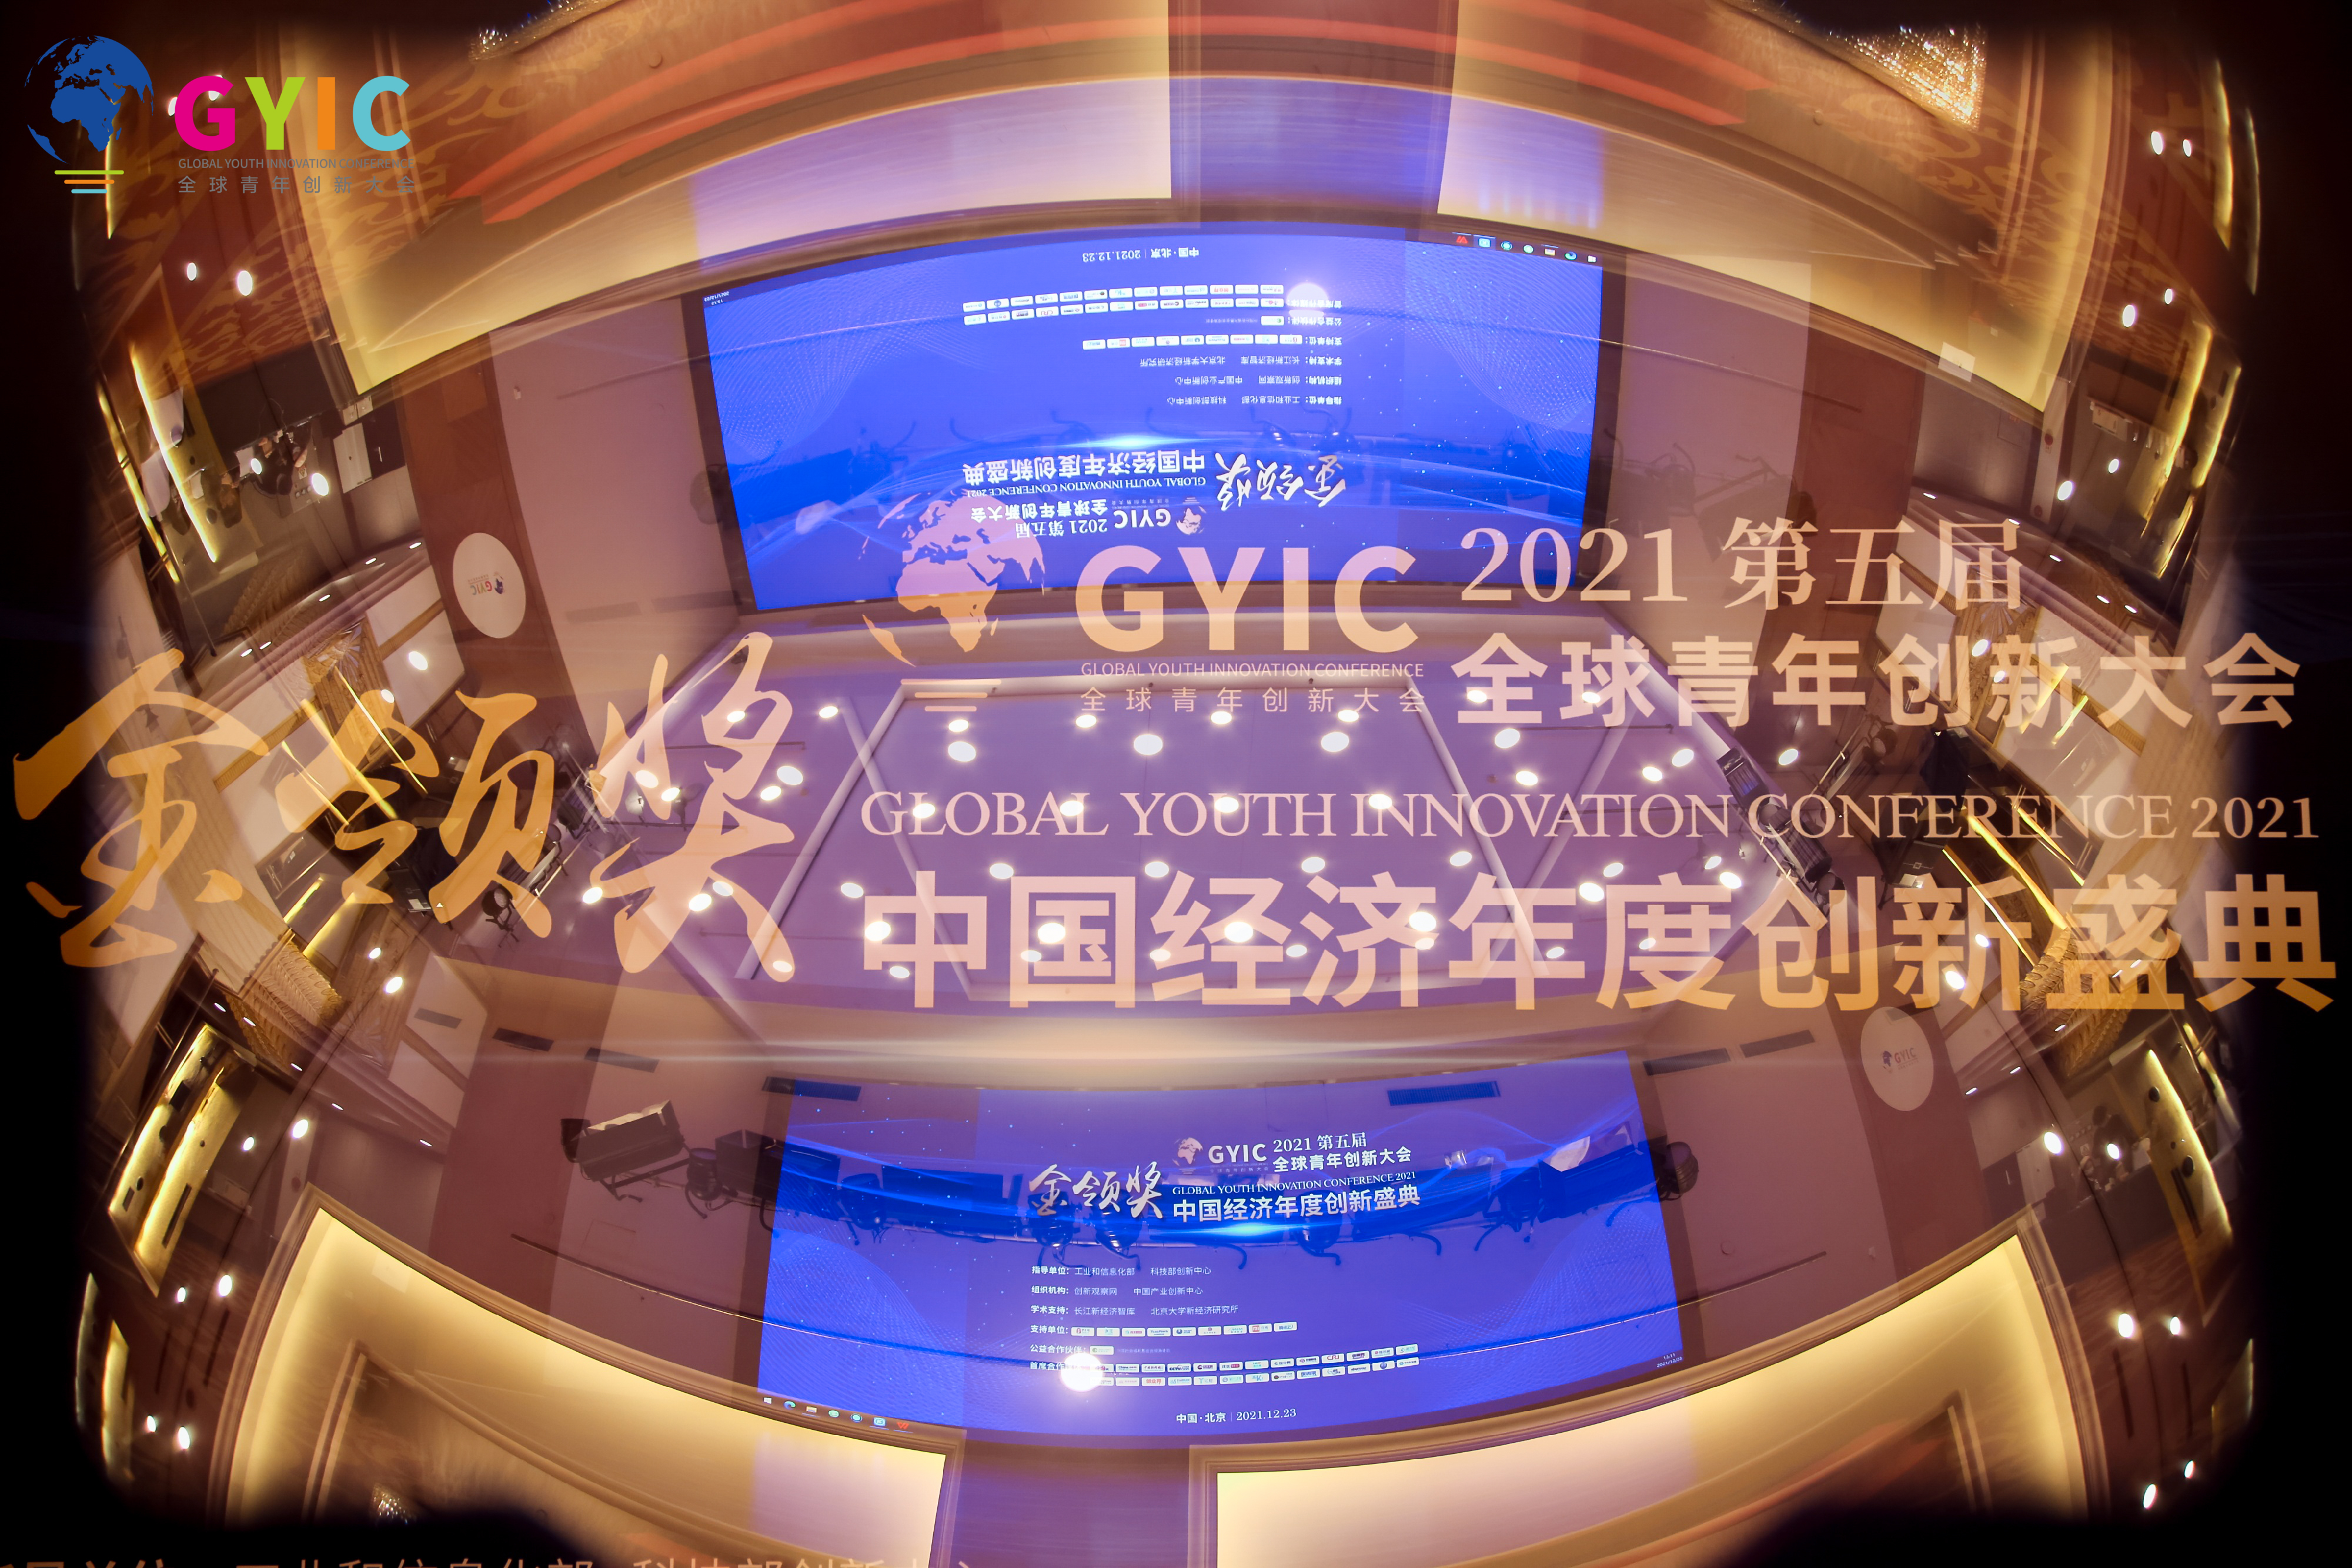 2021全球青年创新大会在京召开 亚杰秘书长郭基梅受邀参会颁奖